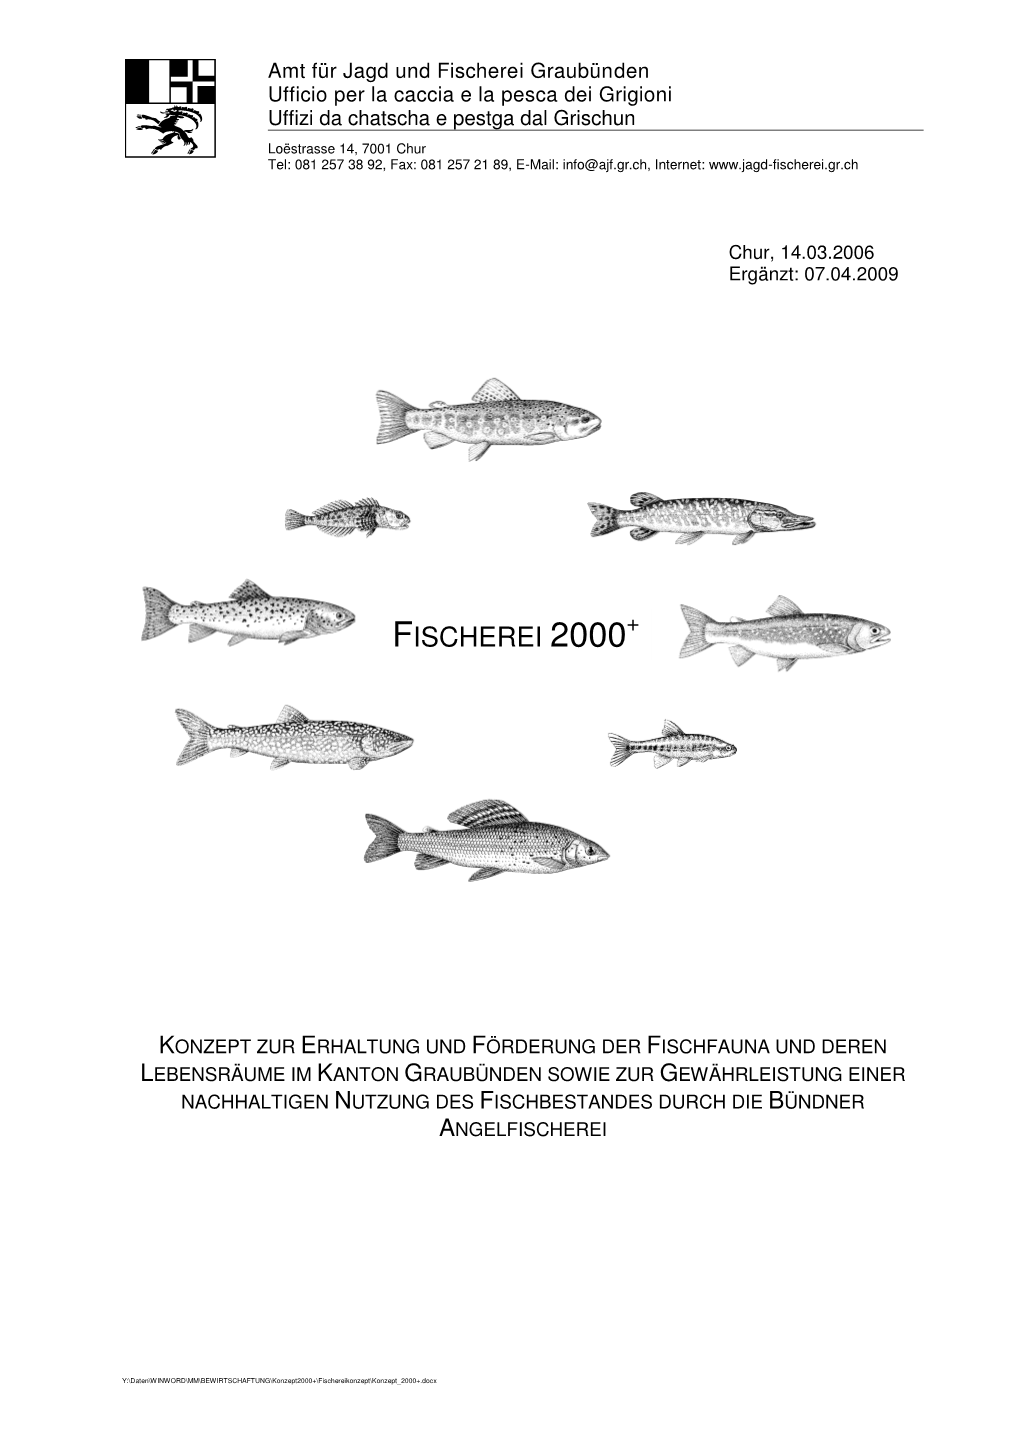 Fischerei 2000